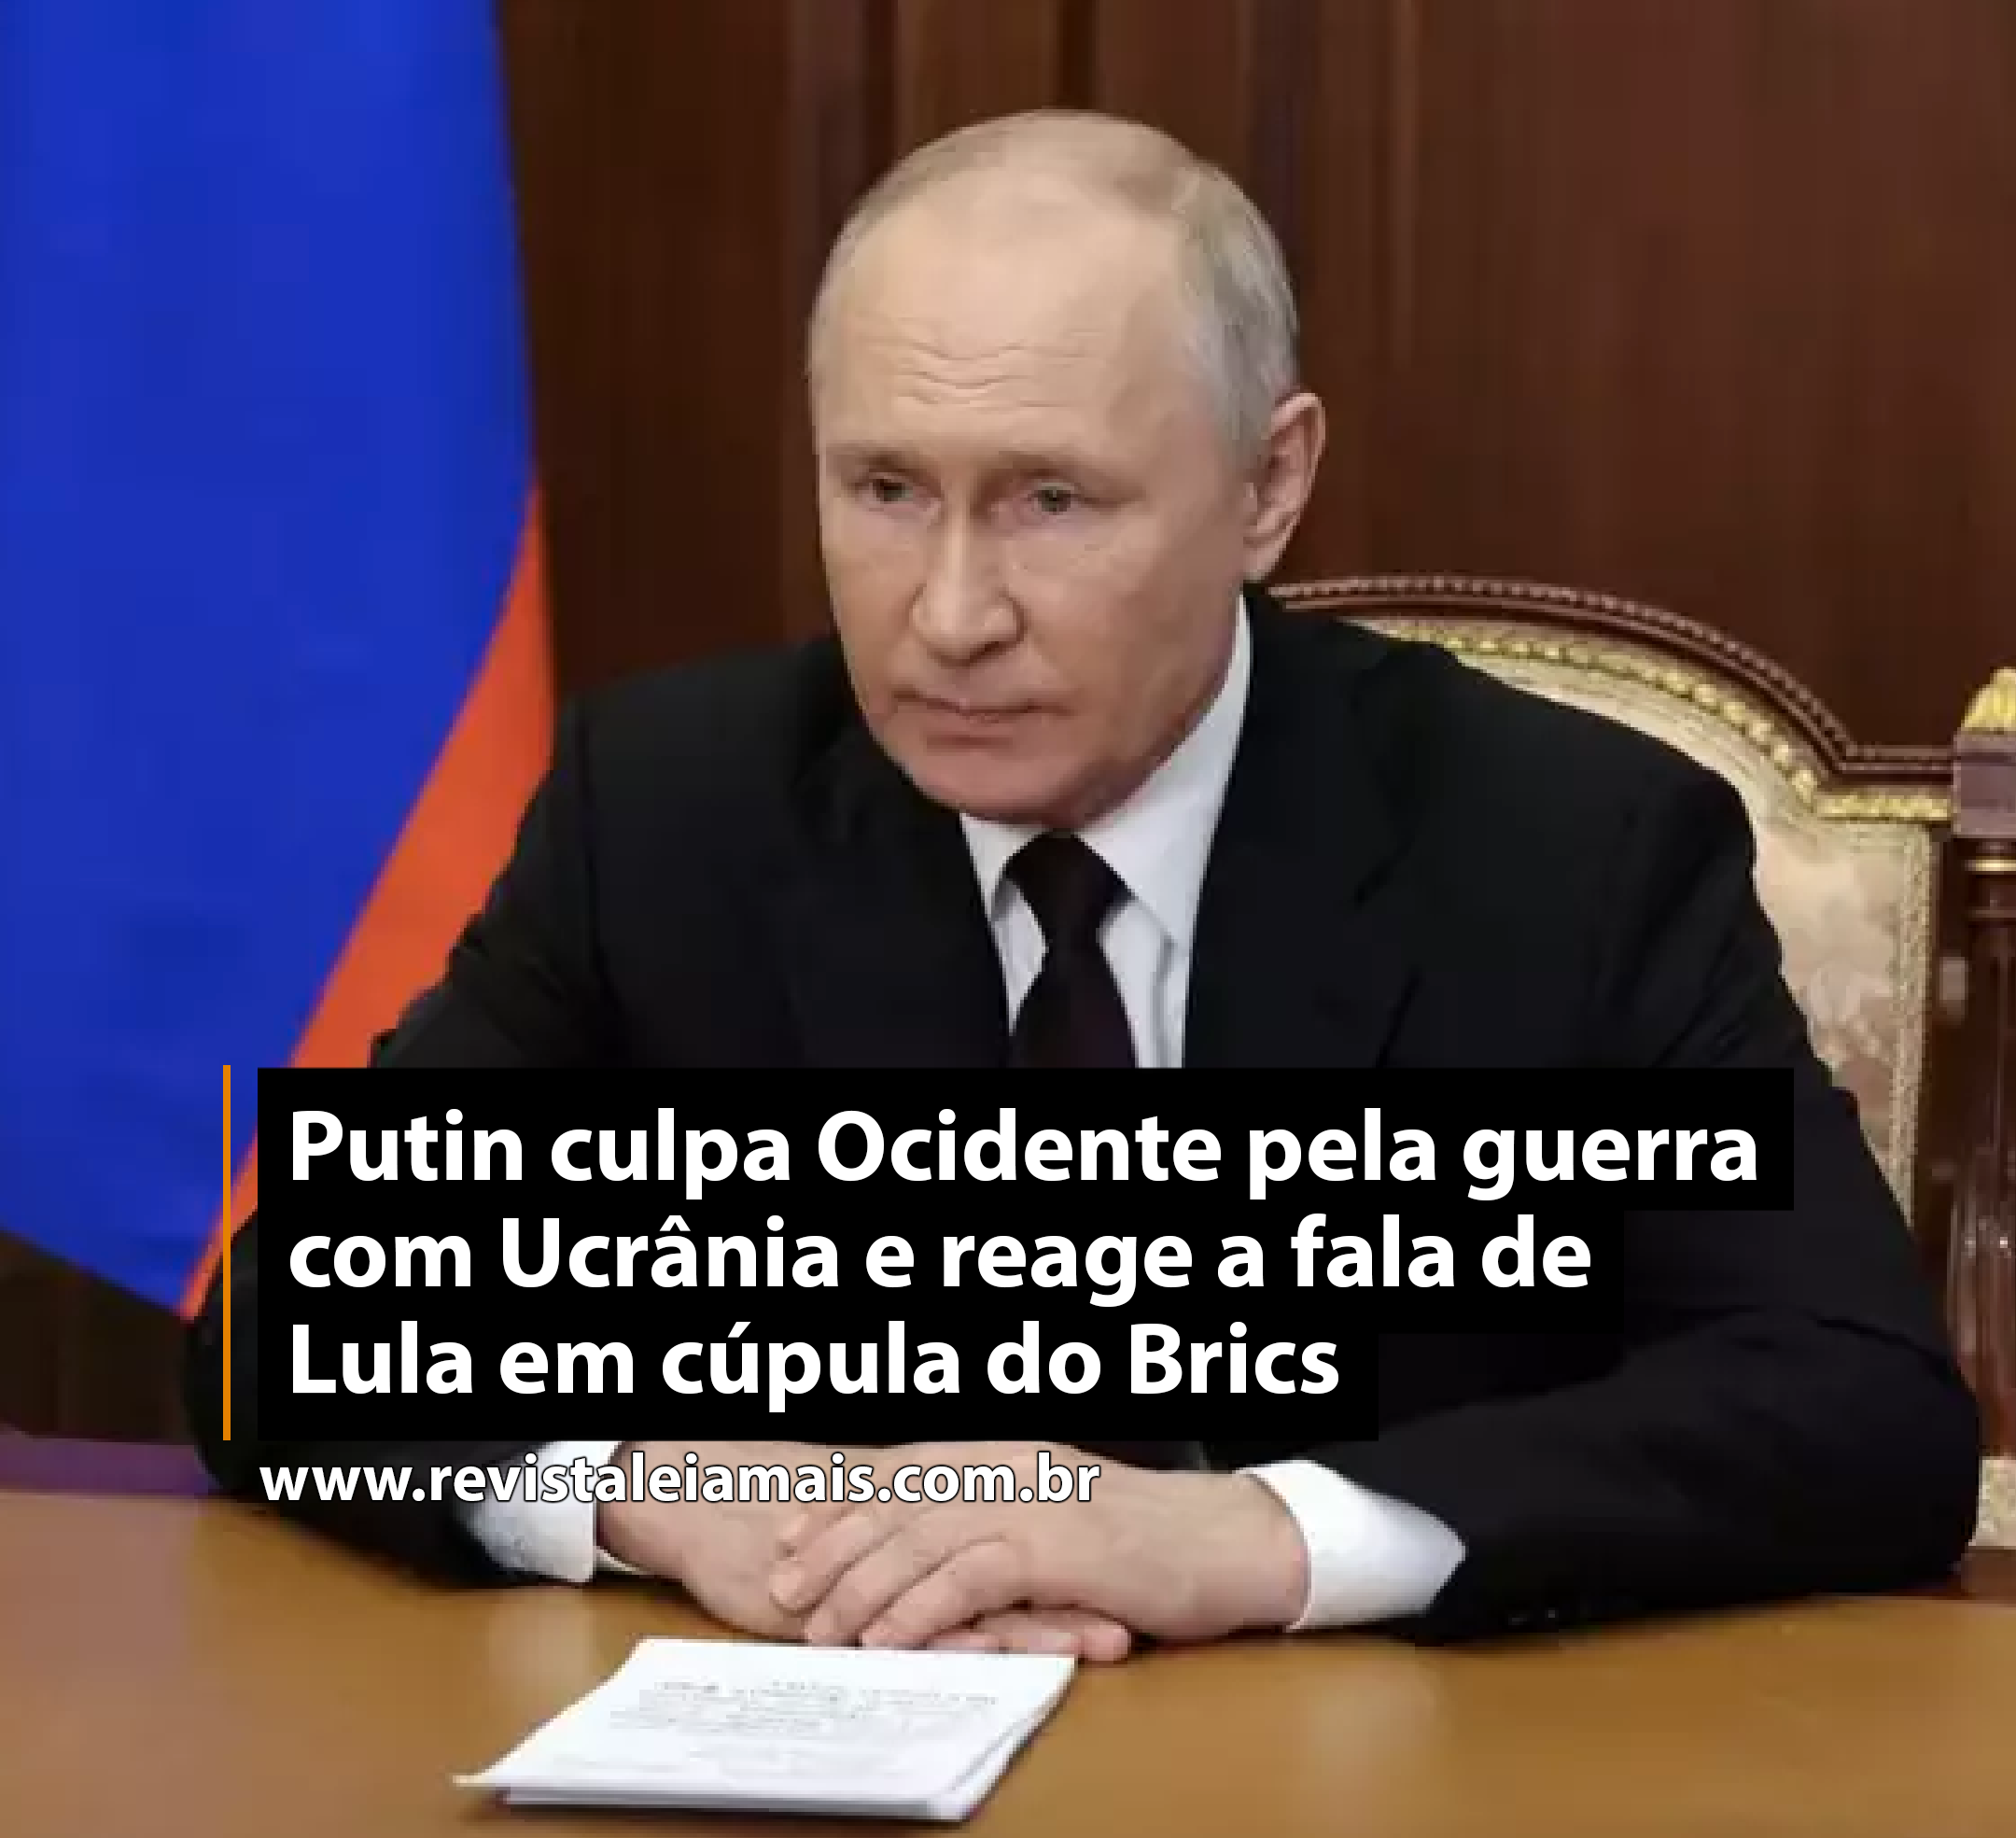 Putin culpa Ocidente pela guerra com Ucrânia e reage a fala de Lula em cúpula do Brics